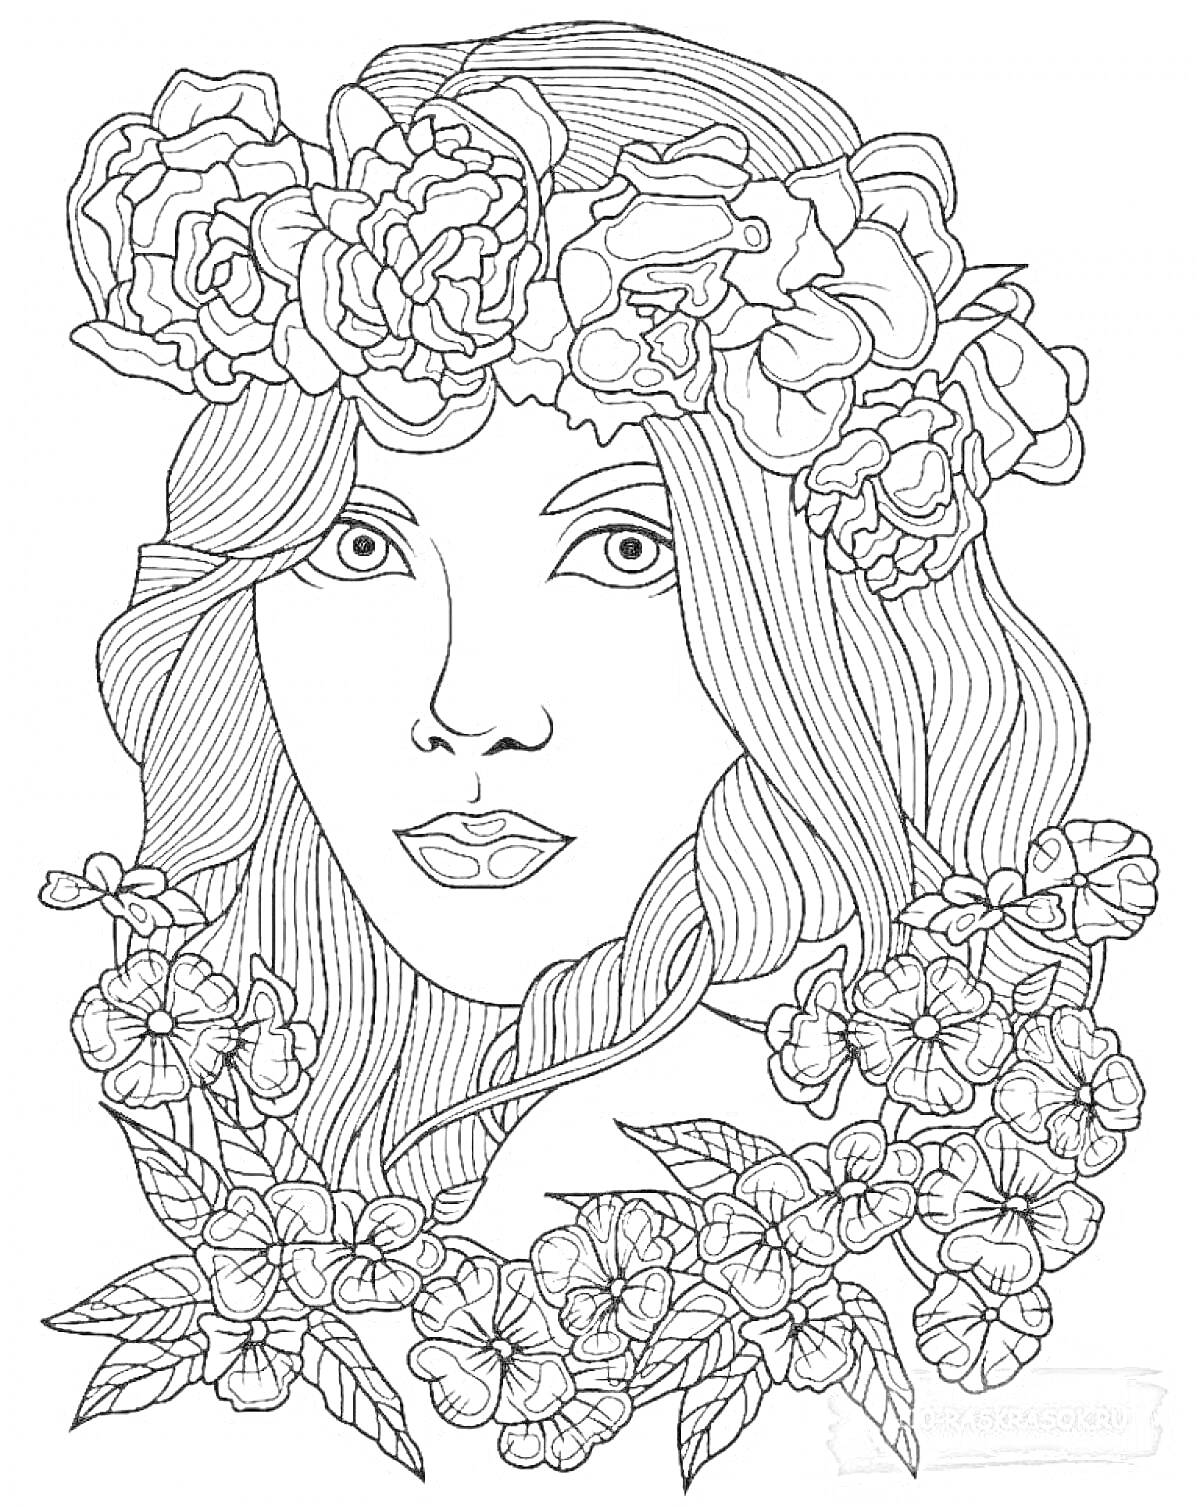 Раскраска девушка с длинными волосами в венке из крупных цветов, окруженная цветами и листьями